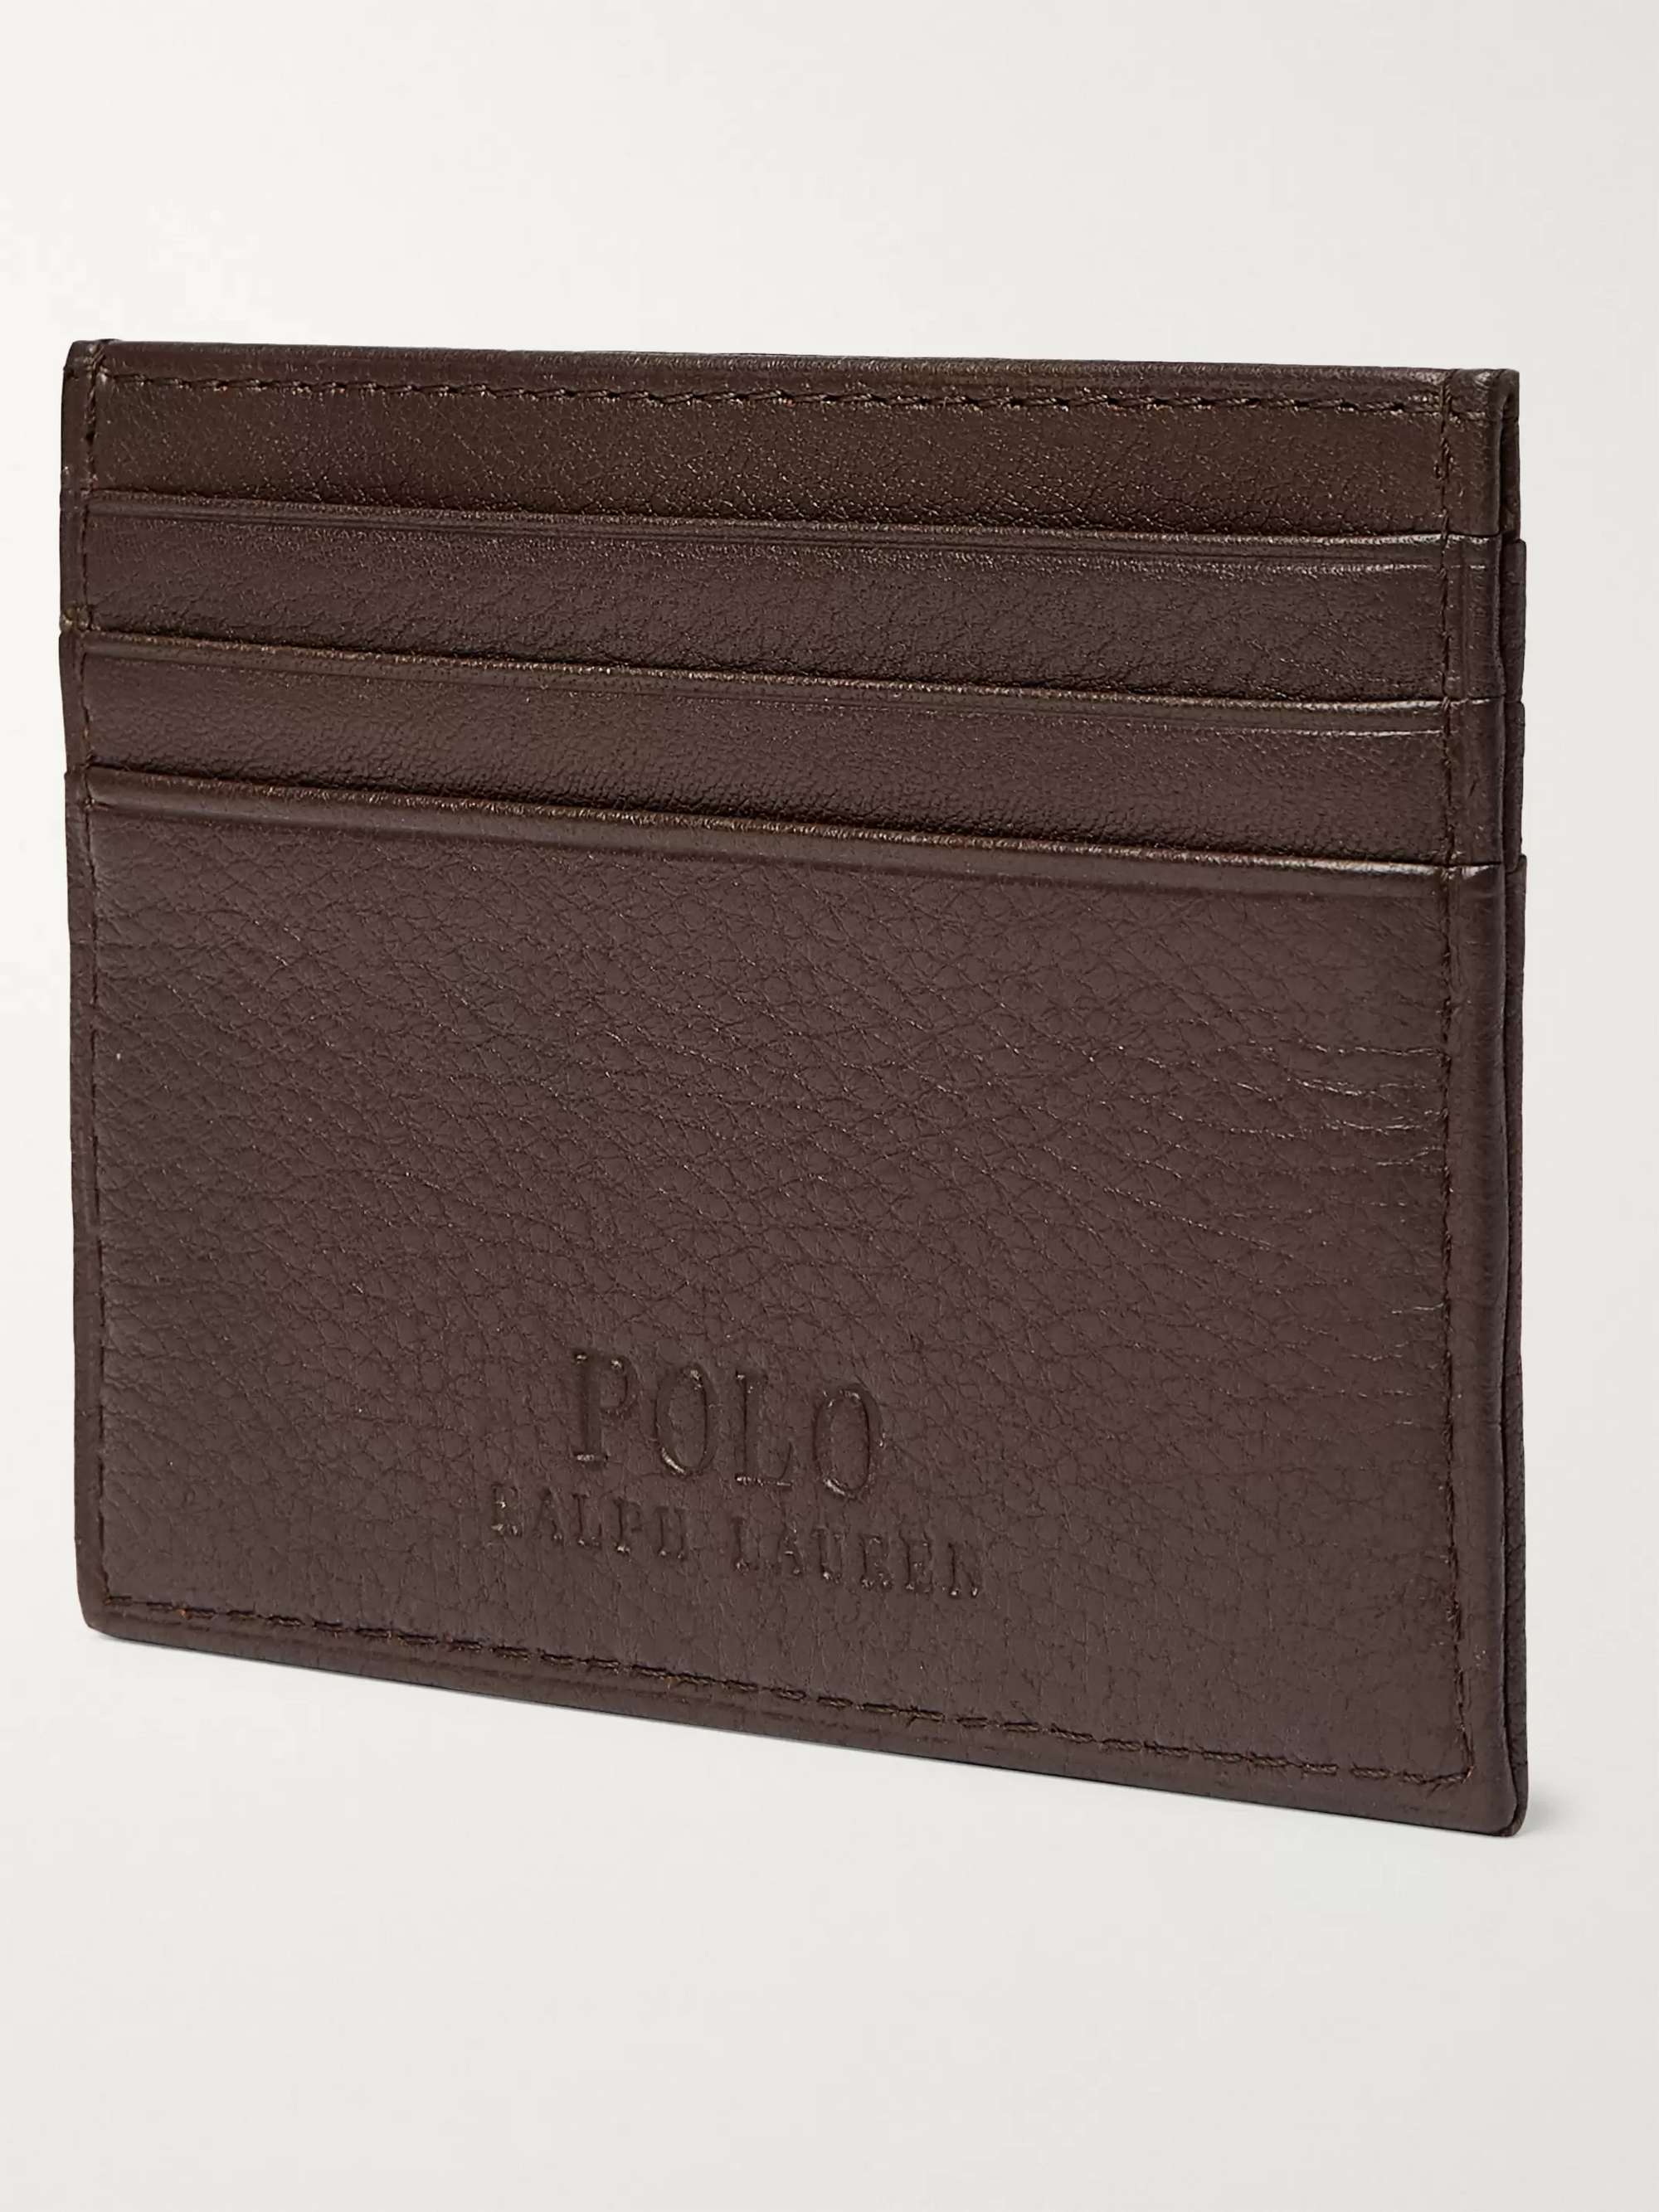 POLO RALPH LAUREN Full-Grain Leather Cardholder